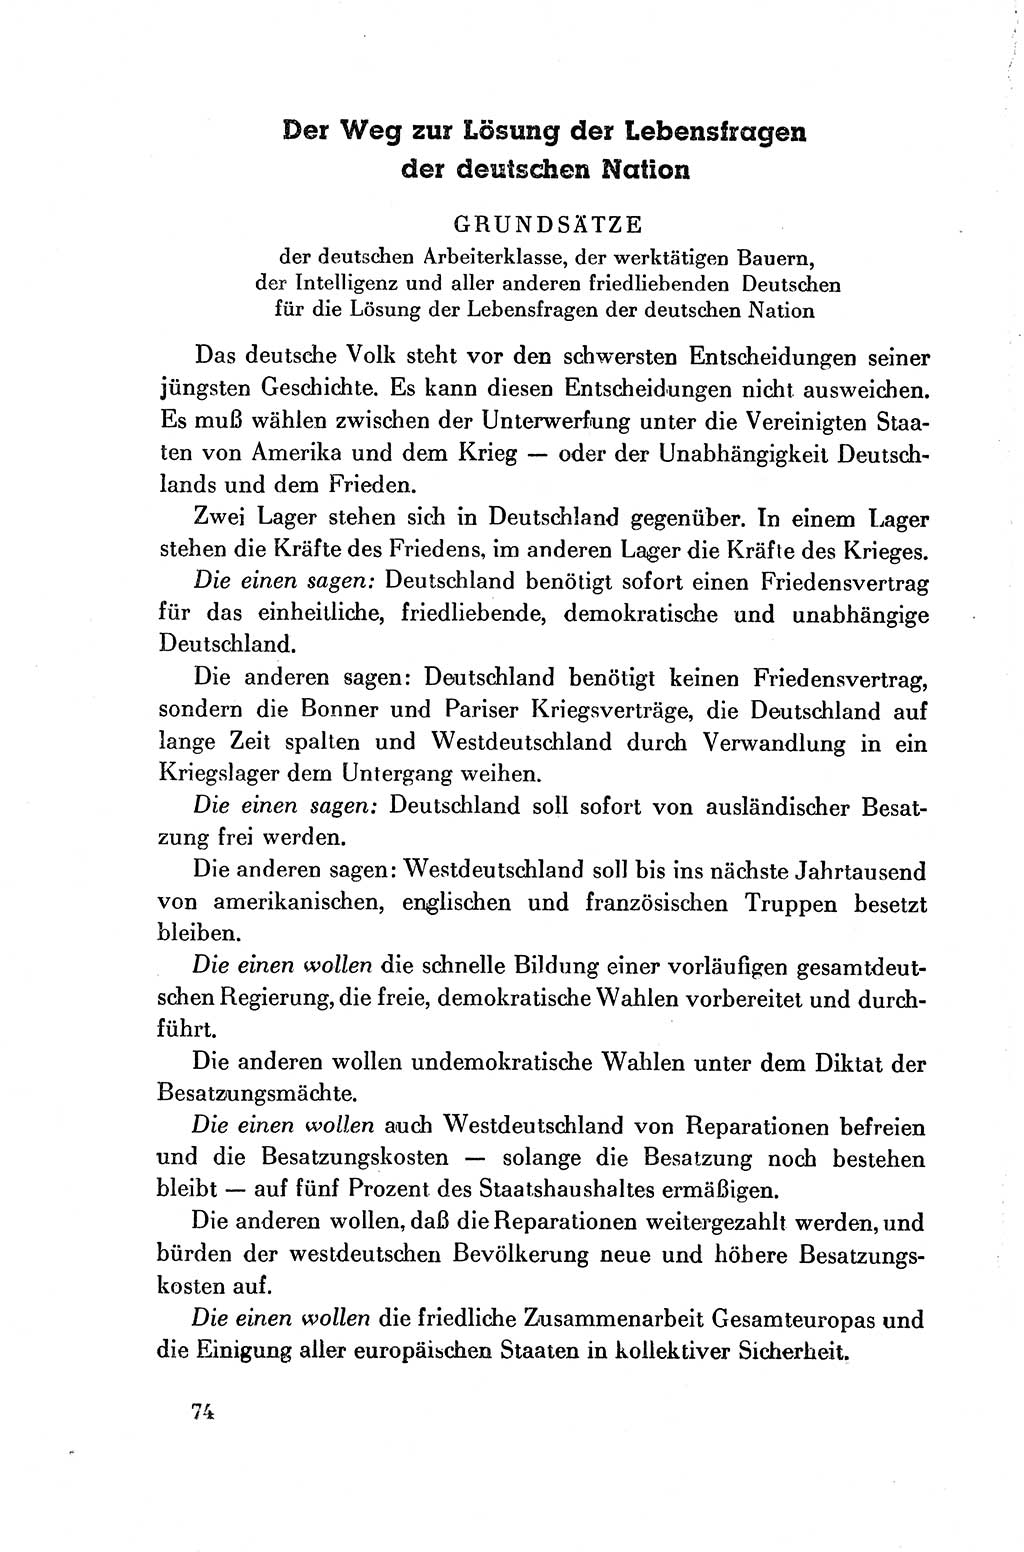 Dokumente der Sozialistischen Einheitspartei Deutschlands (SED) [Deutsche Demokratische Republik (DDR)] 1954-1955, Seite 74 (Dok. SED DDR 1954-1955, S. 74)